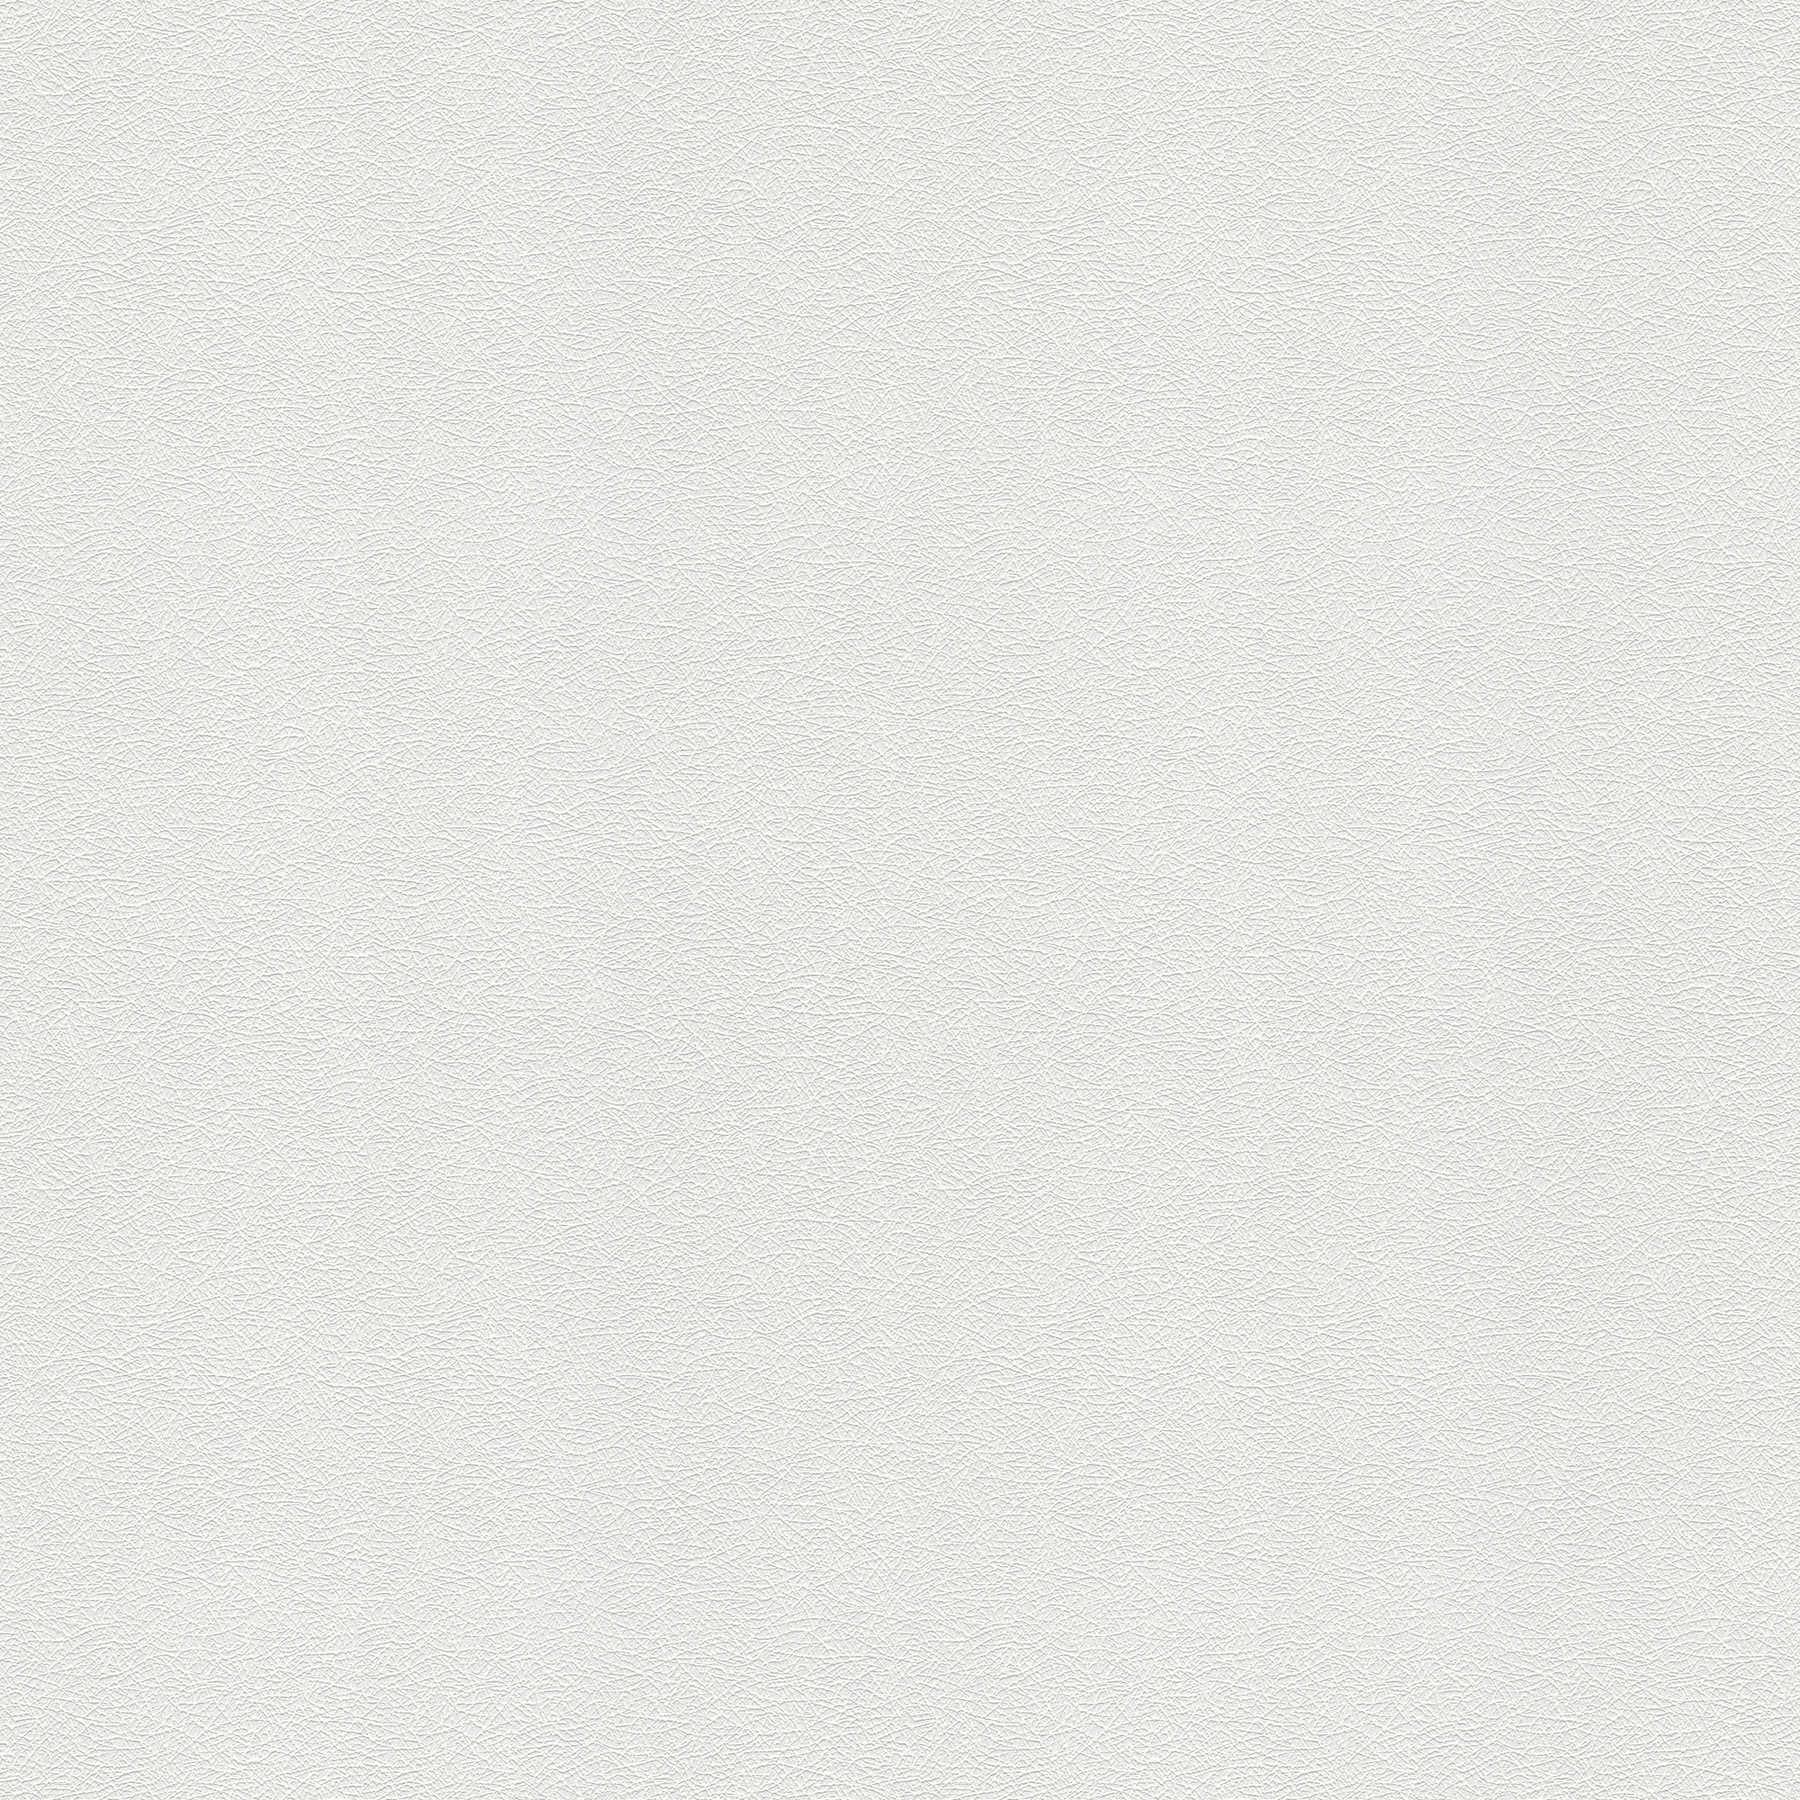 Papier peint blanc structuré avec motif de fibres et aspect tissé - Blanc
